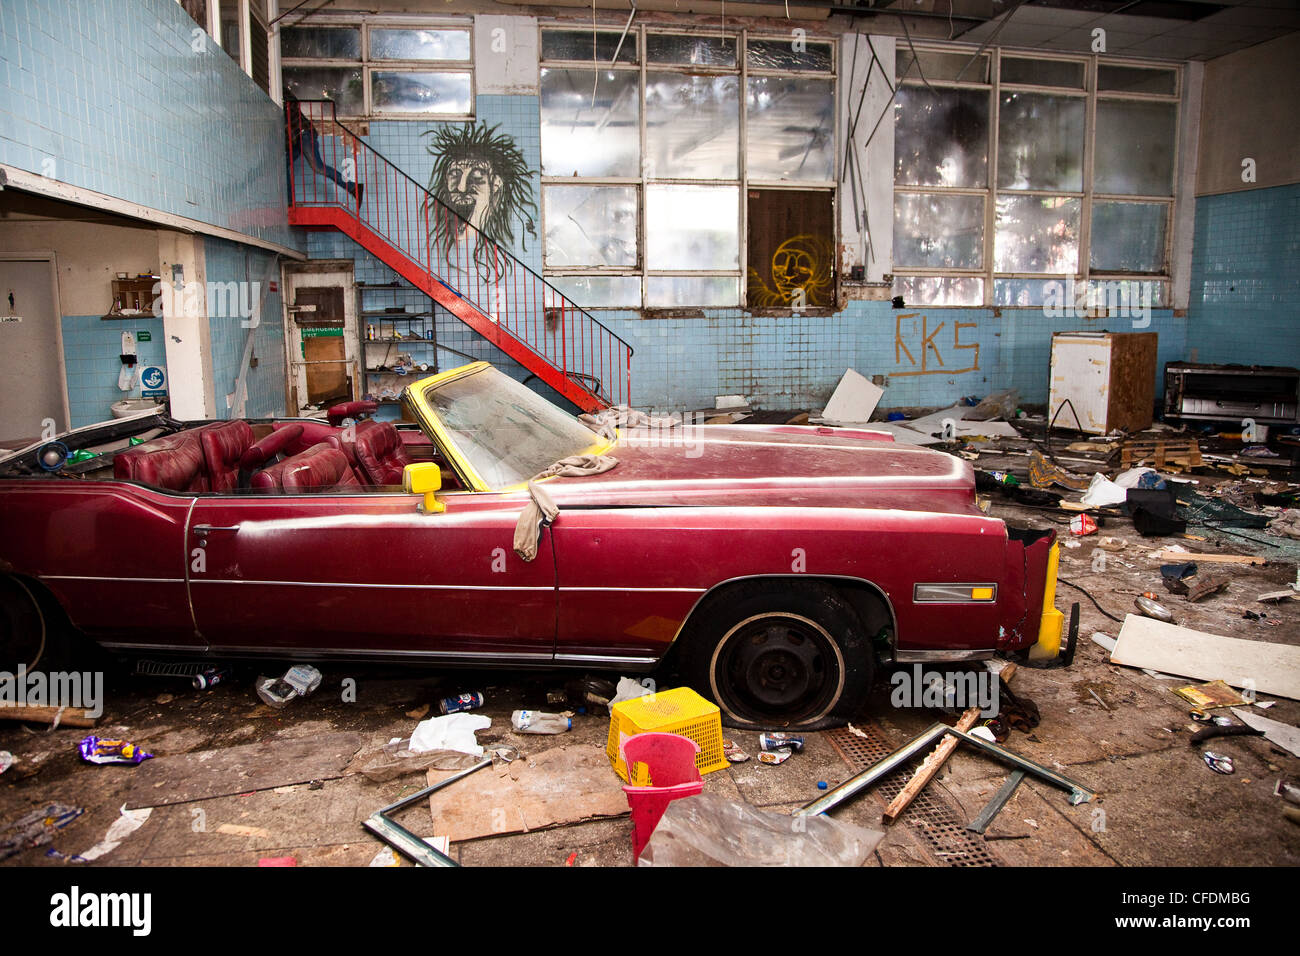 Une Cadillac est vandalisé dans un entrepôt abandonné habitées par des vagabonds dans les sept sœurs, Tottenham, Londres. Banque D'Images